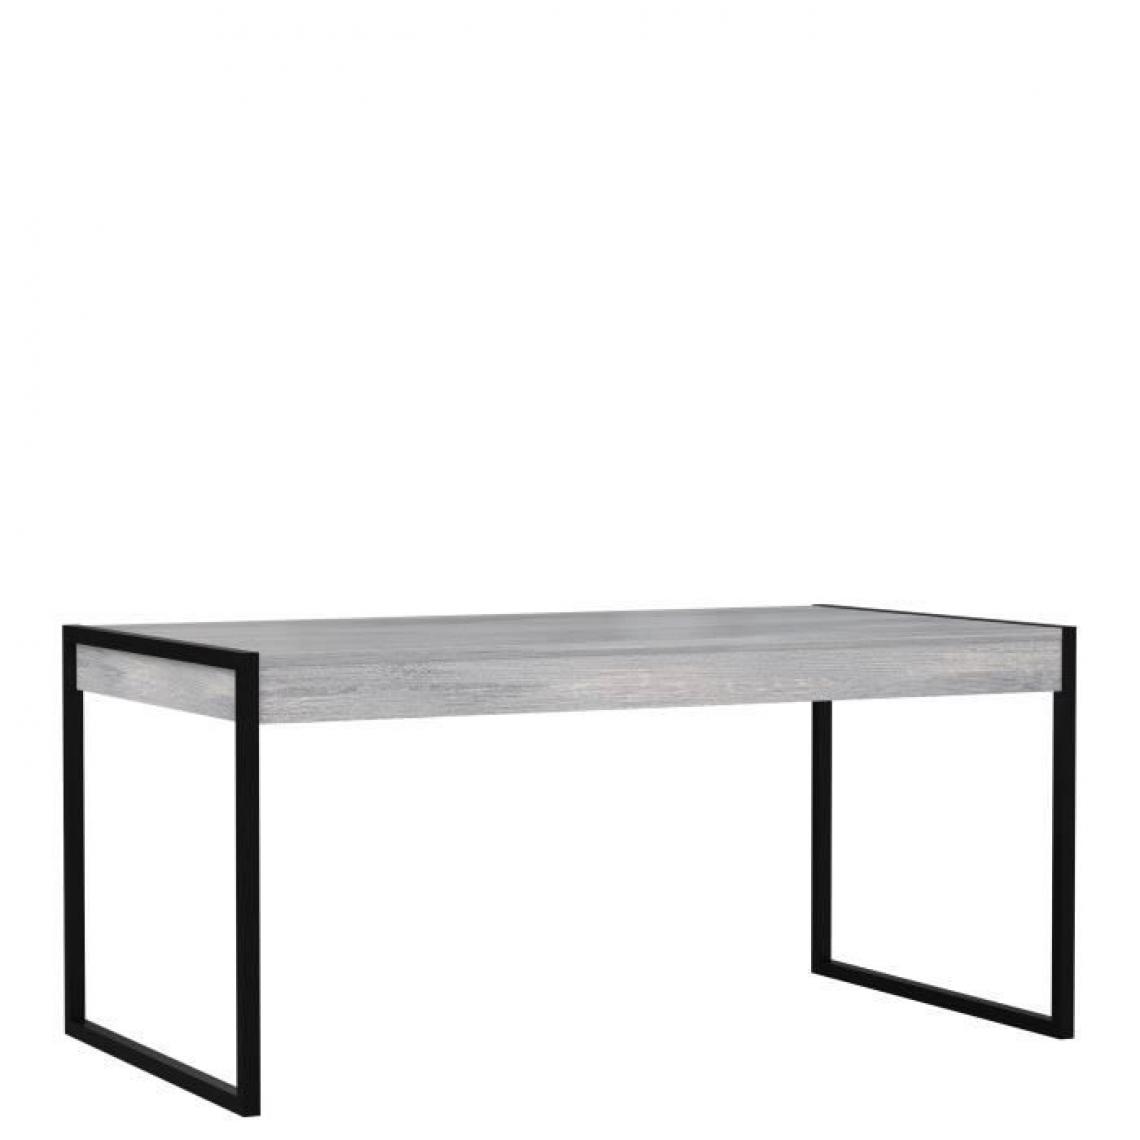 Cstore - CSTORE - table à manger 2 tiroirs - pieds en métal - décor gris - golden state - l 166xp 90, 2xh 76, 9 cm - Tables à manger